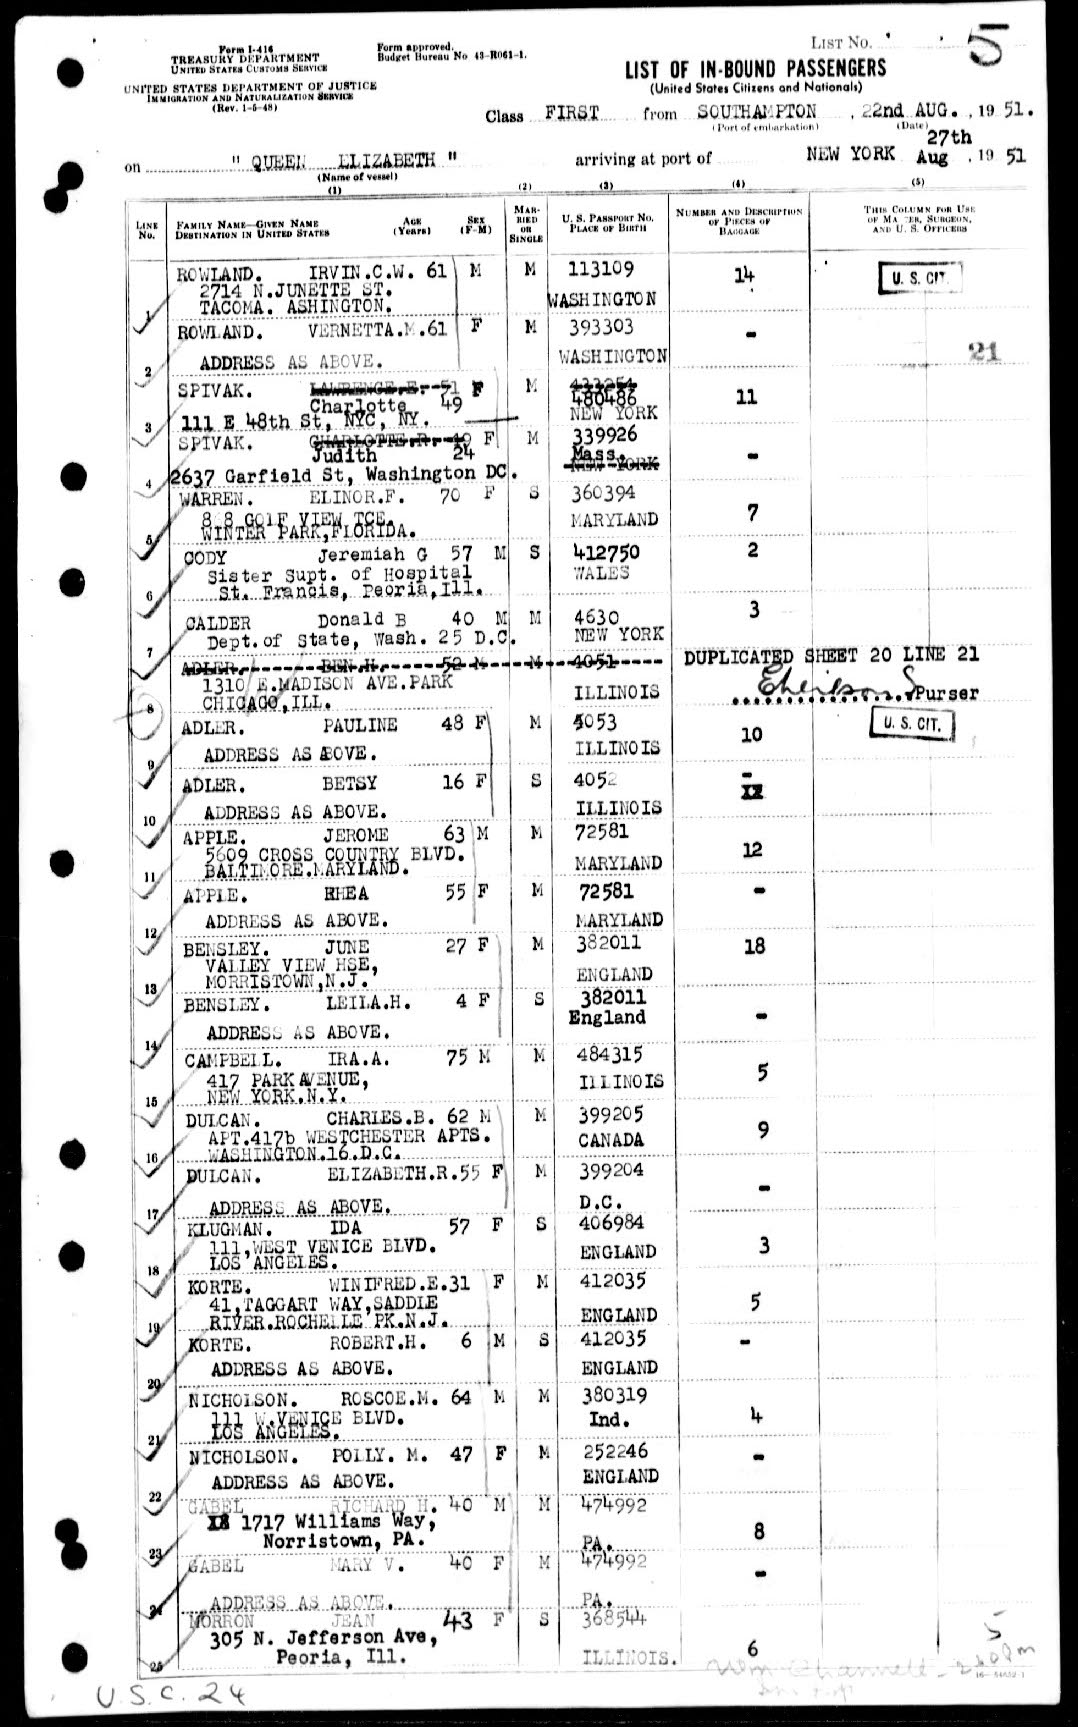 1951 Queen Elizabeth passenger list Adler family